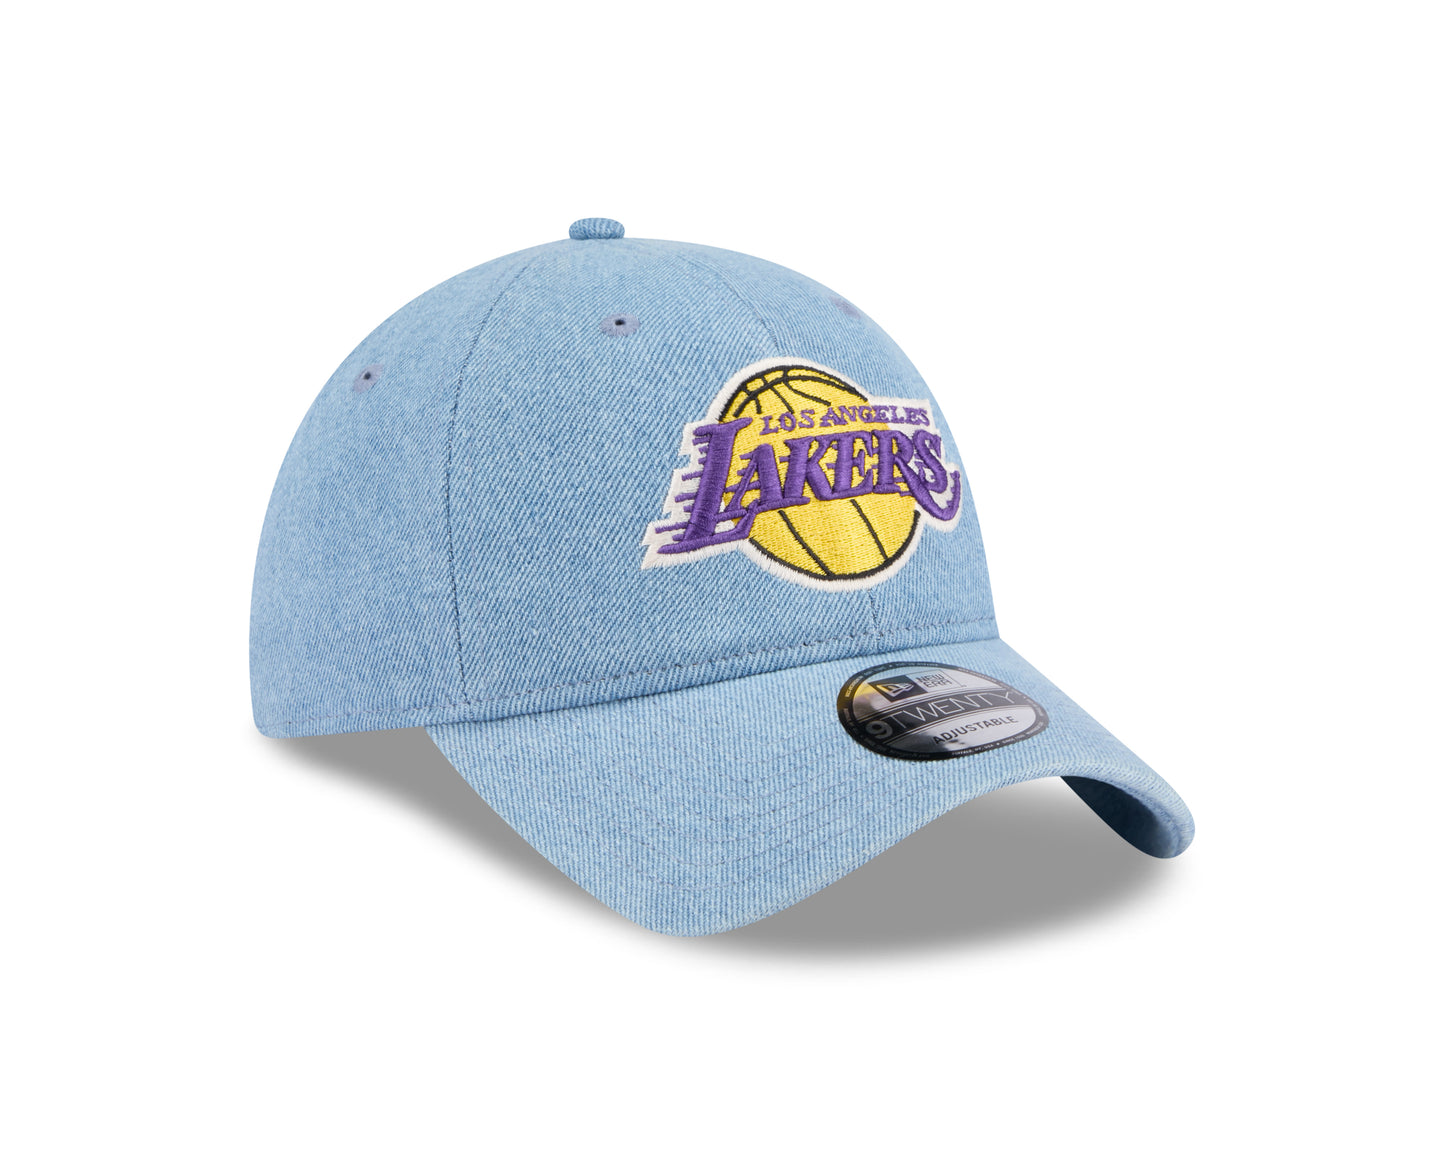 New Era - Washed Denim - Los Angeles Lakers - 9Twenty  - XLB - Headz Up 